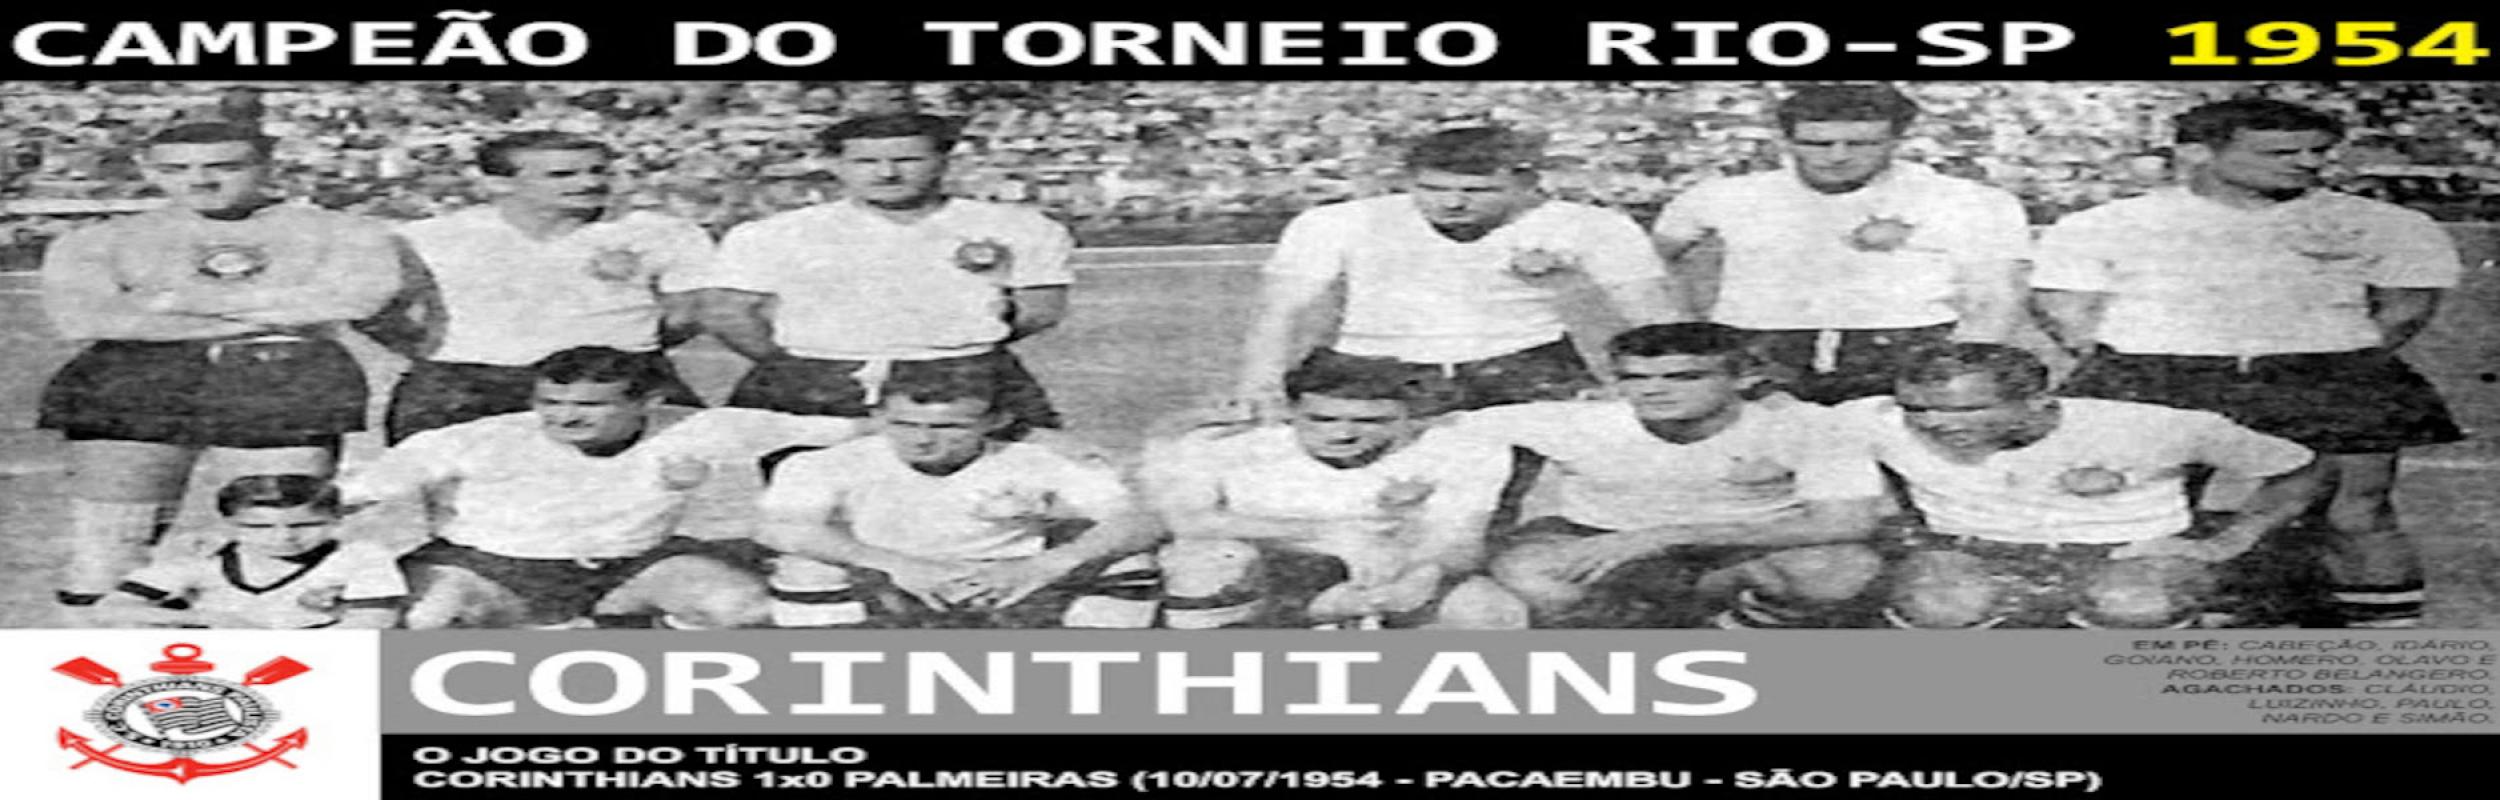 Torneio Rio-São Paulo 1954